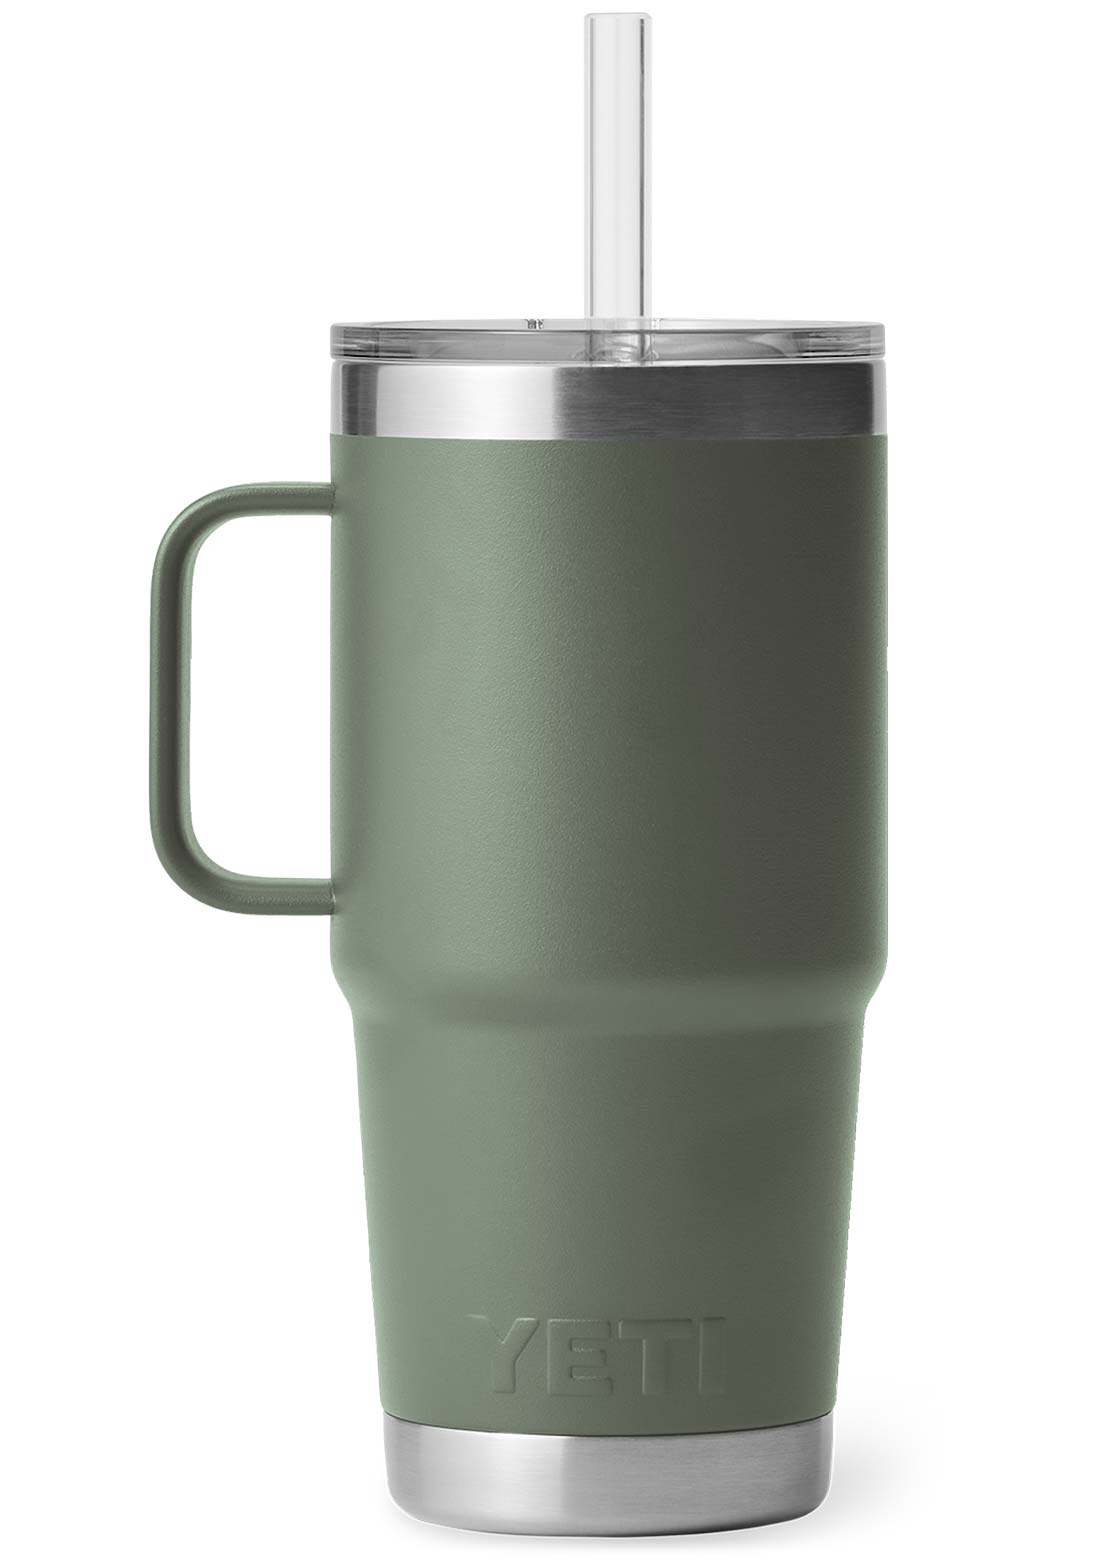 YETI Rambler 25 oz Straw Mug, Vacuum Insulated, Stainless Steel, Power Pink